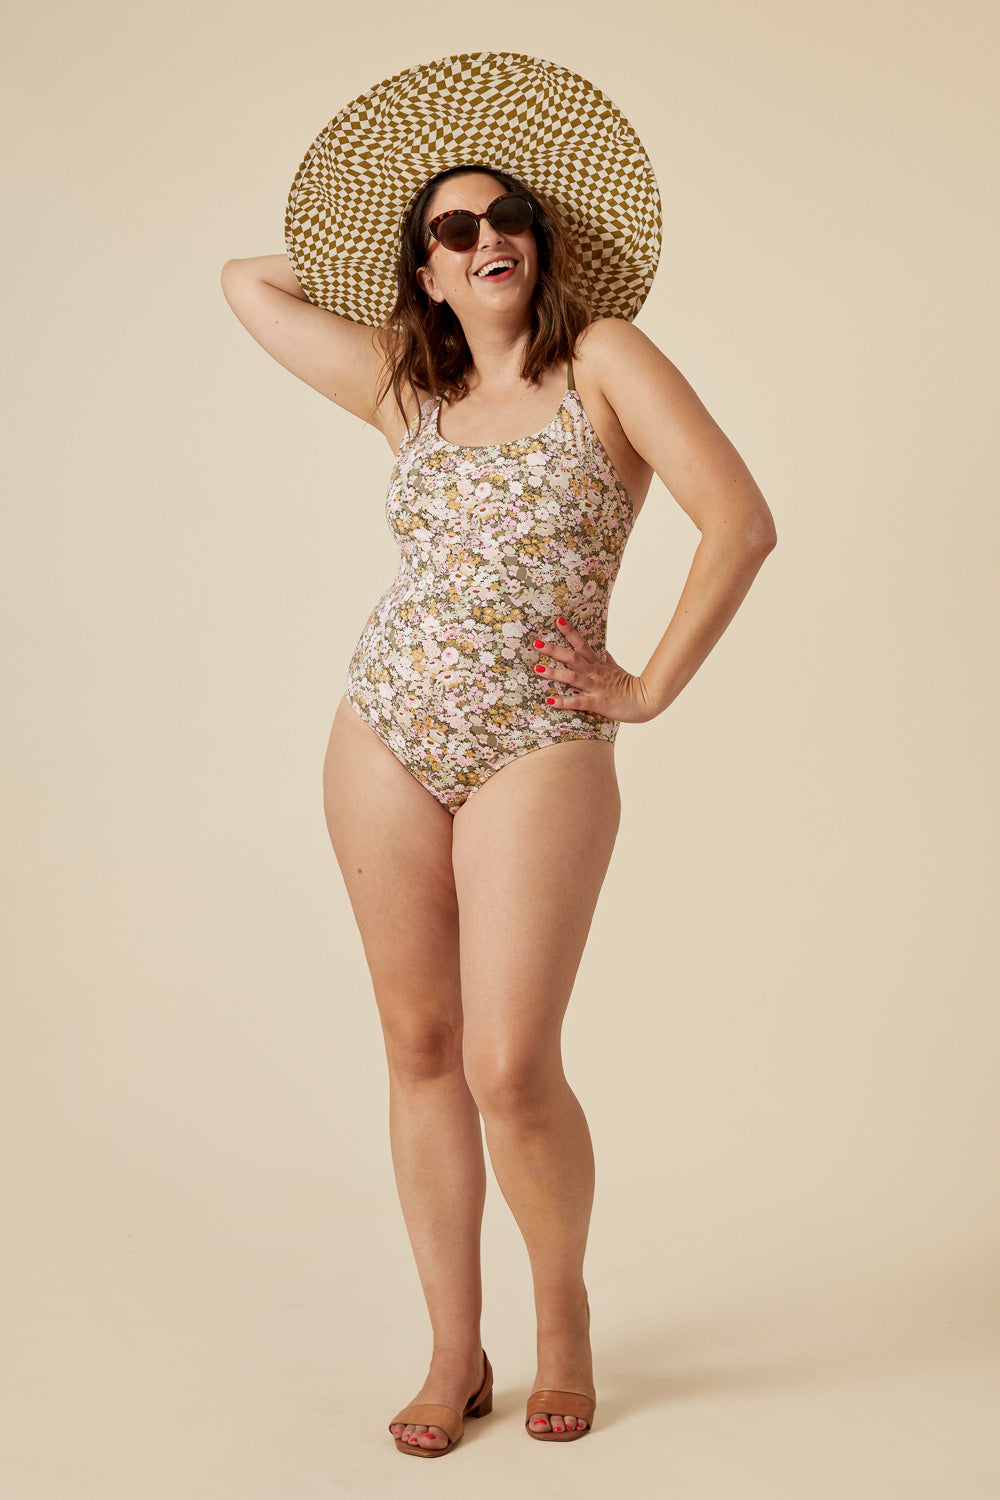 Faye Swimsuit Sizes 0-20 - Closet Core Patterns